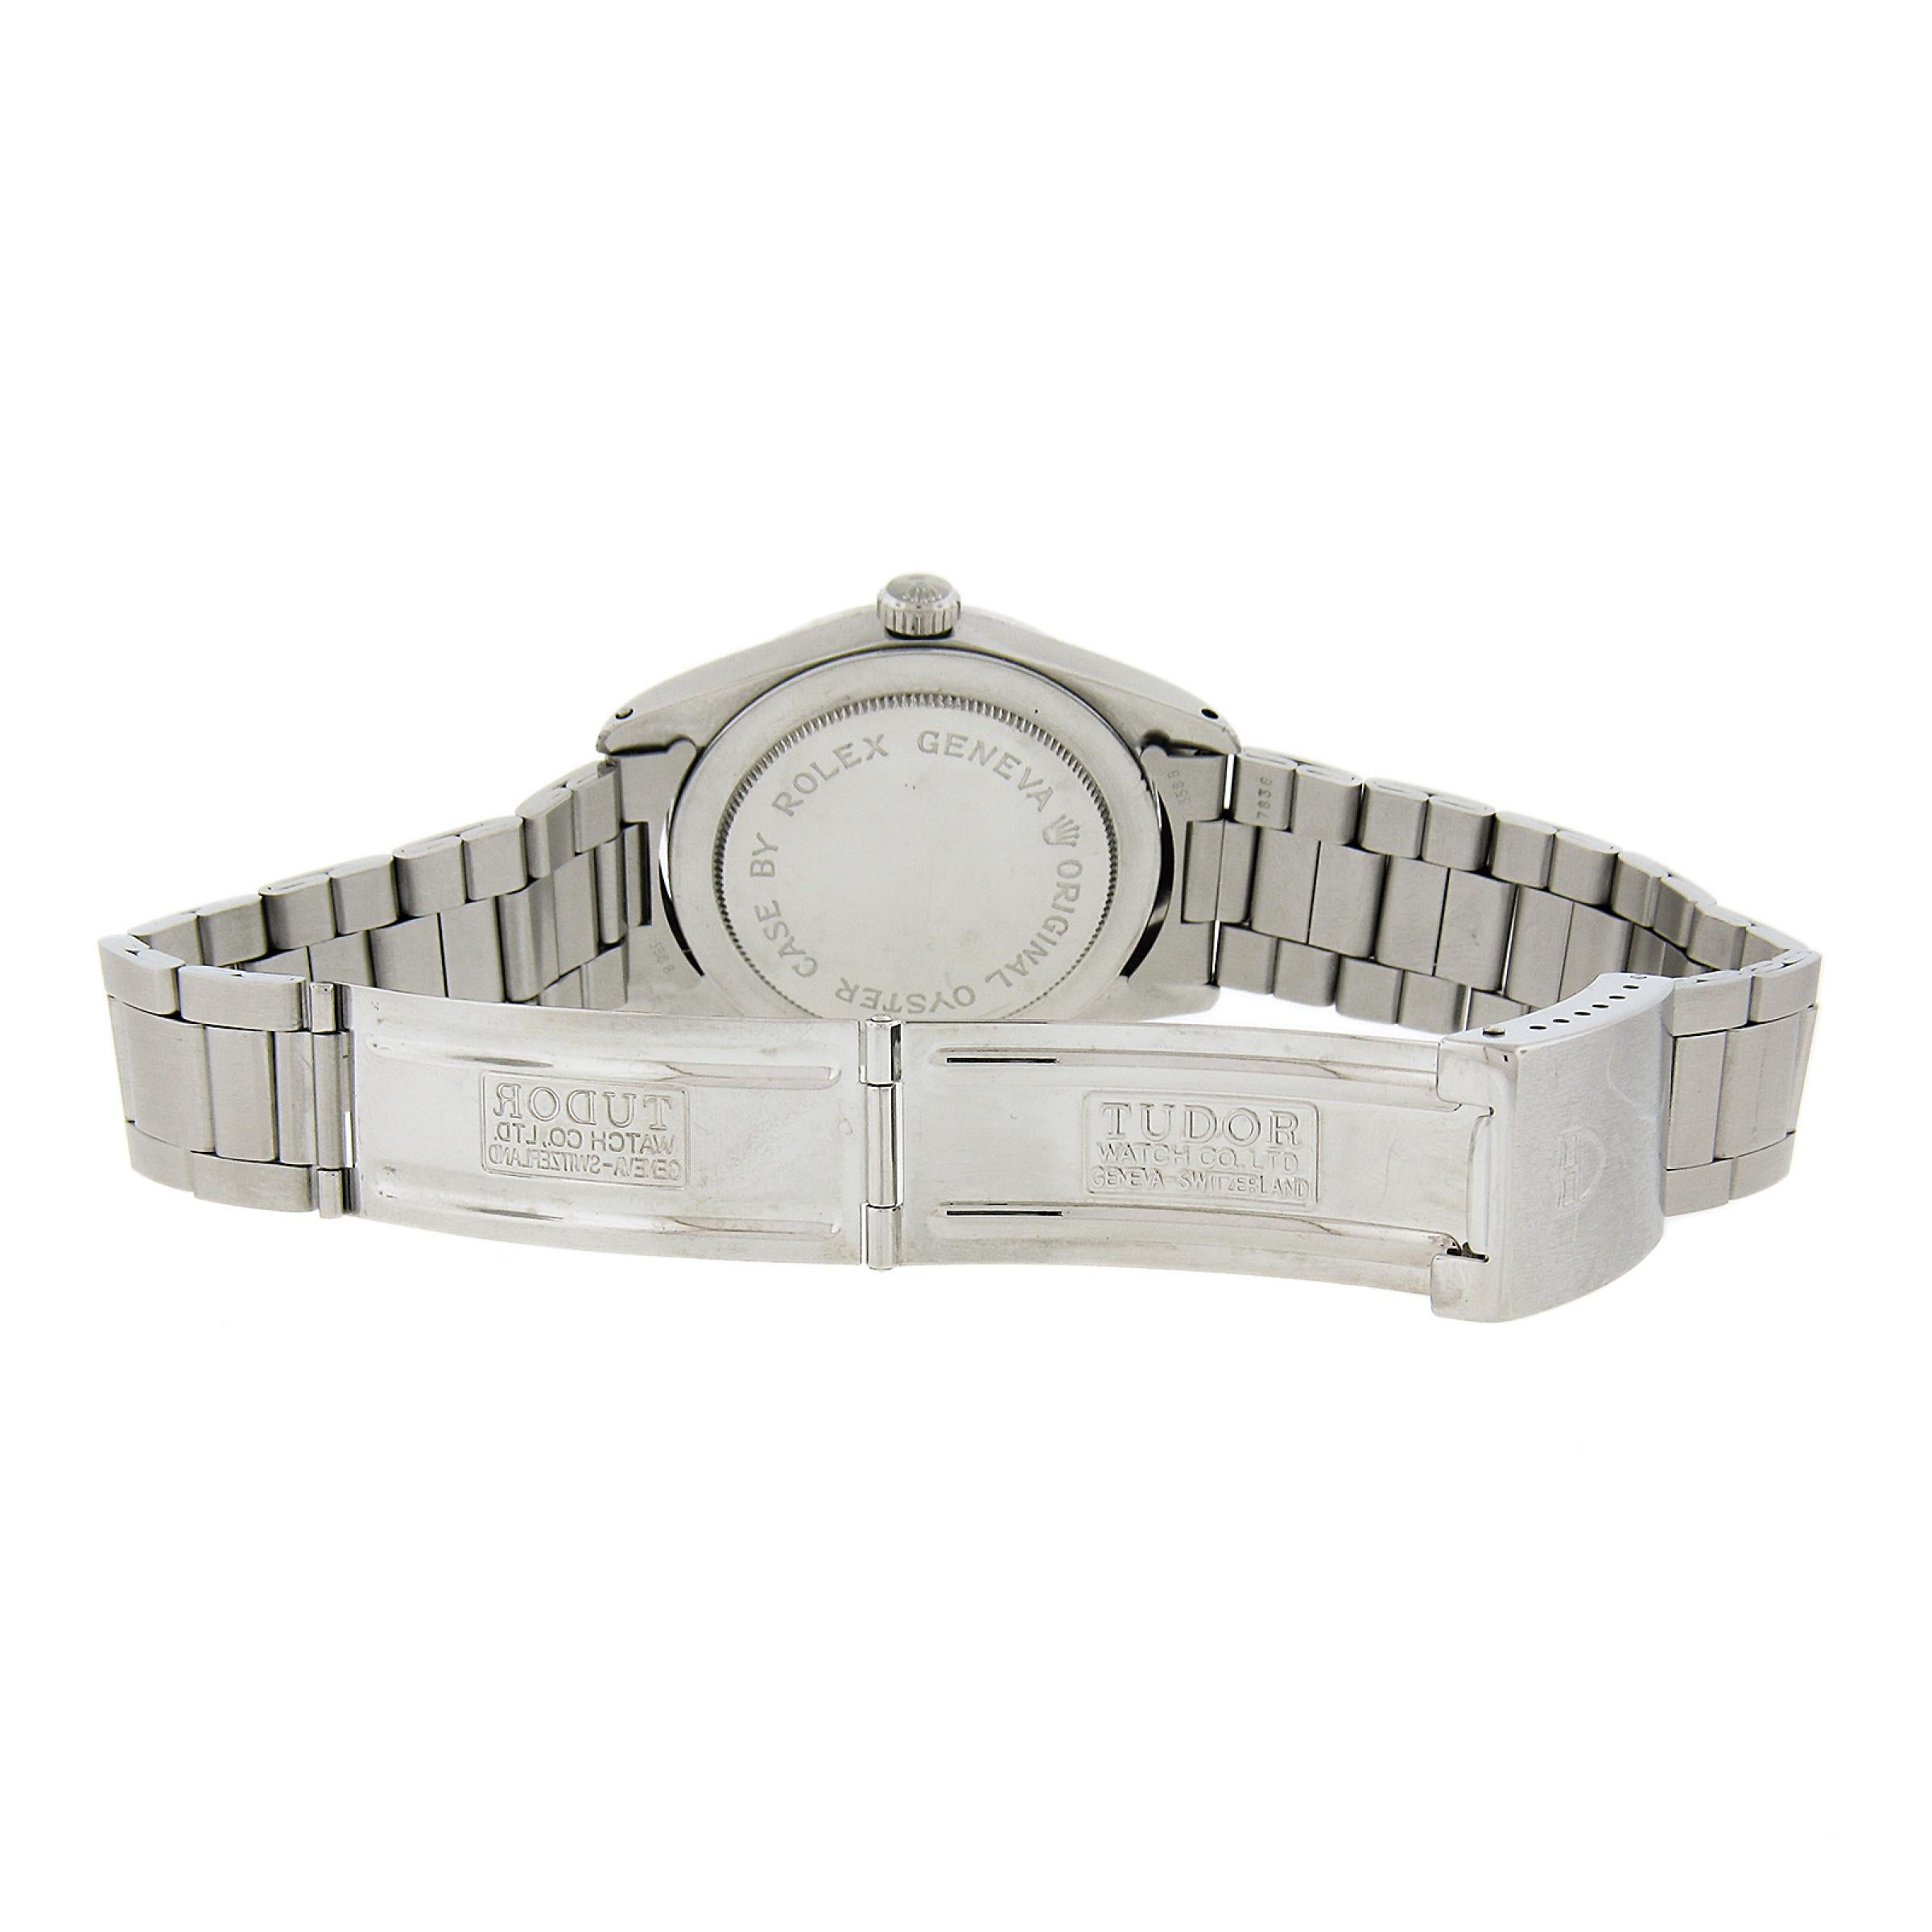 Cette montre-bracelet classique Tudor Date + Day date approximativement de 1969 et porte la référence 7017/0. Elle est dotée d'un rare cadran gris qui semble avoir été nettoyé par le passé en raison de dommages causés par l'eau. Le mouvement à